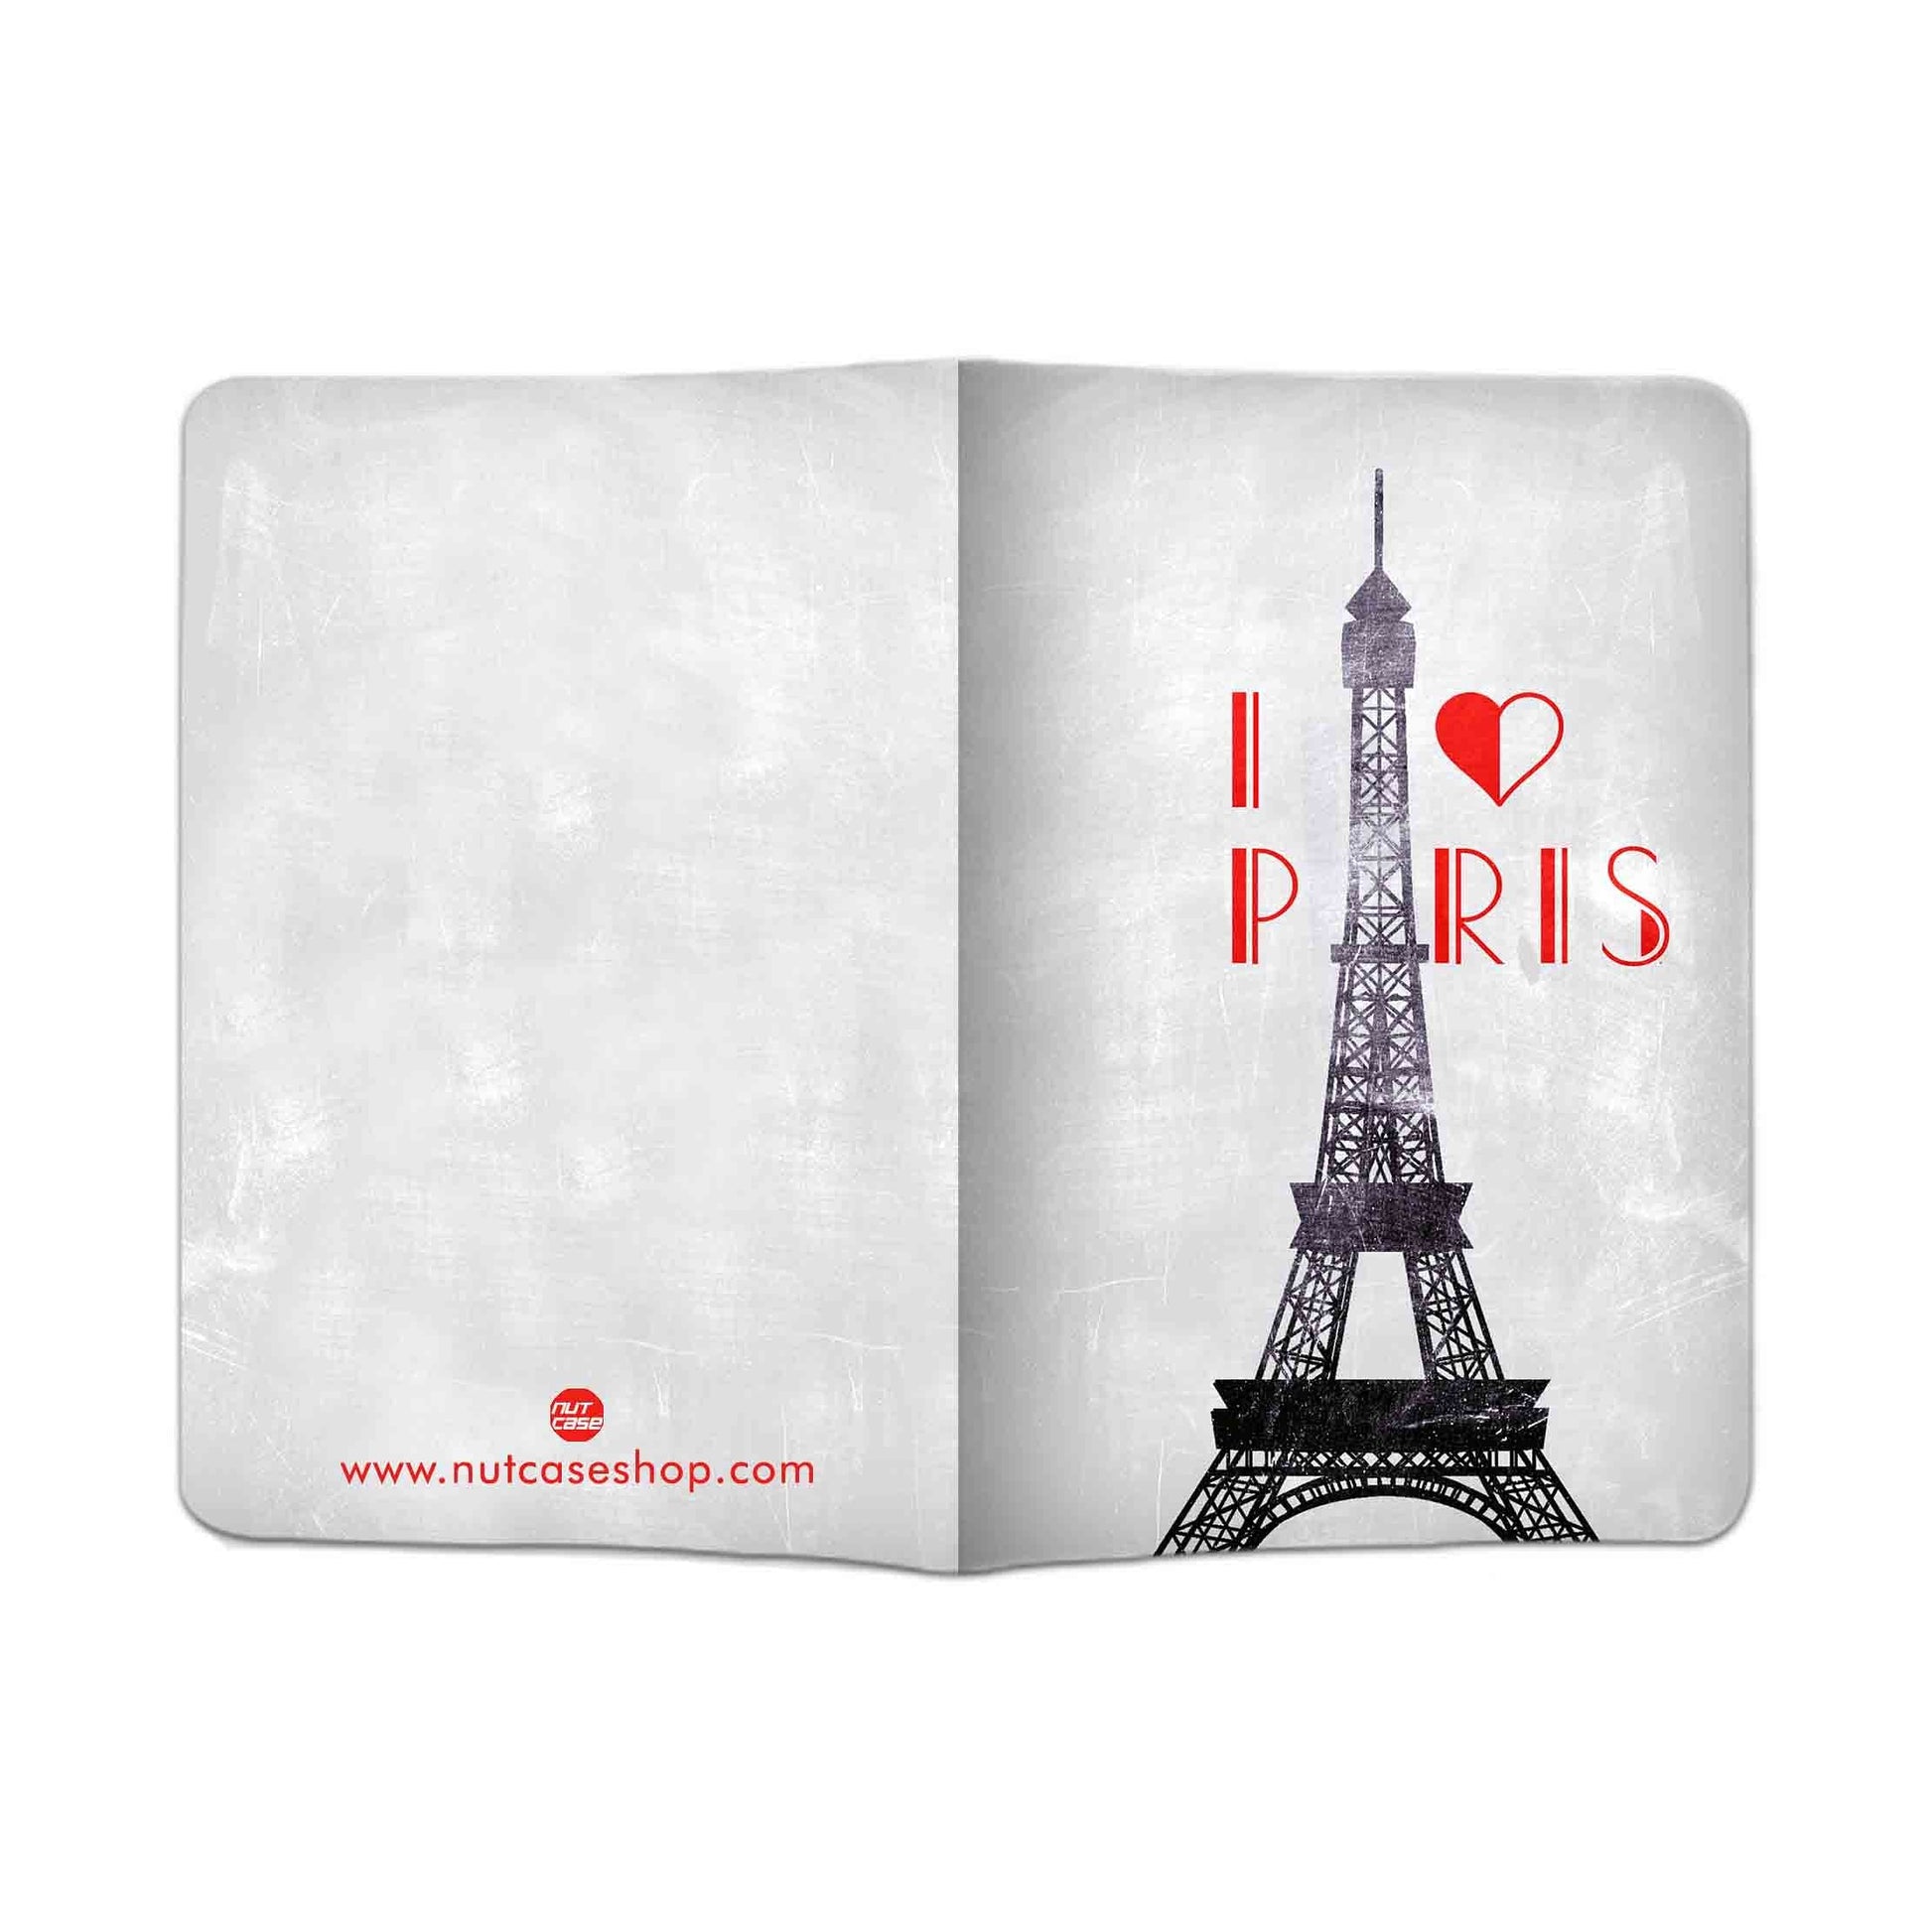 Designer Passport Cover -  I Love Paris Nutcase